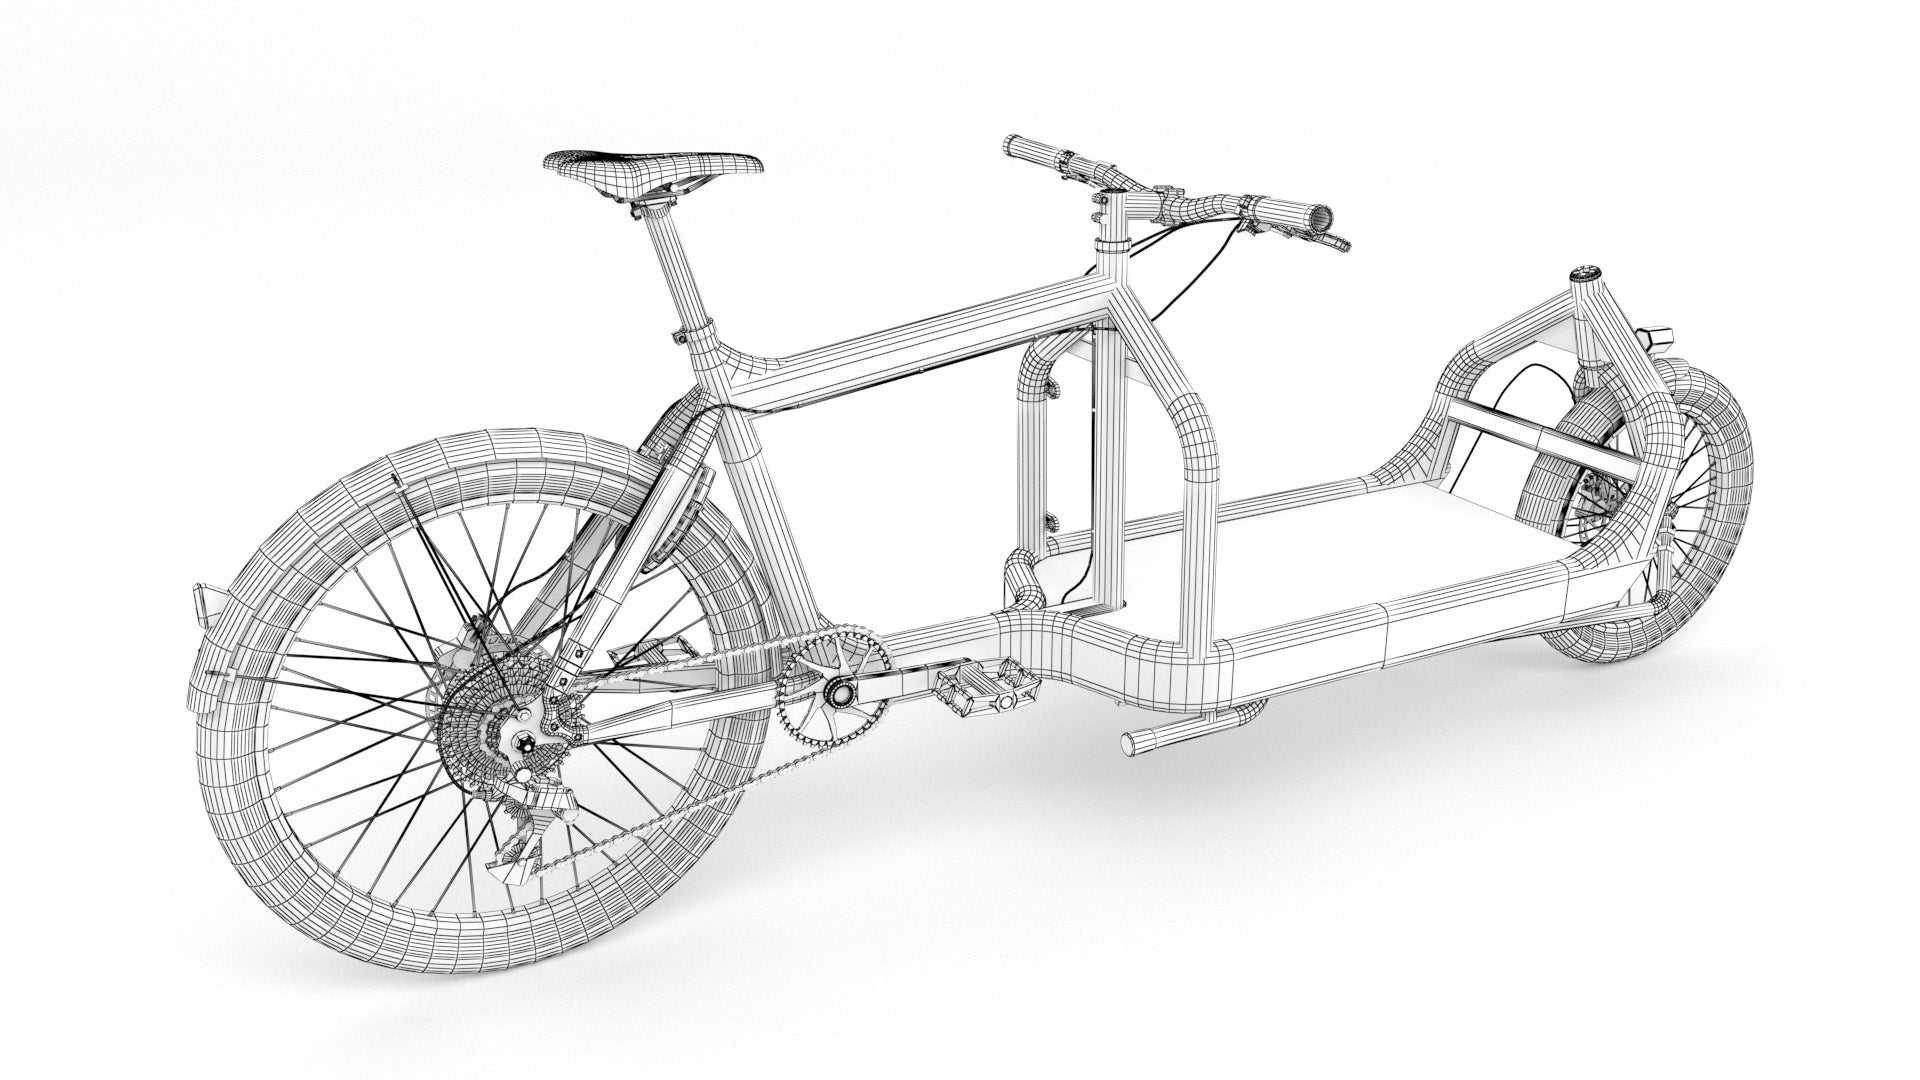 Bullit cargo bike 3D model